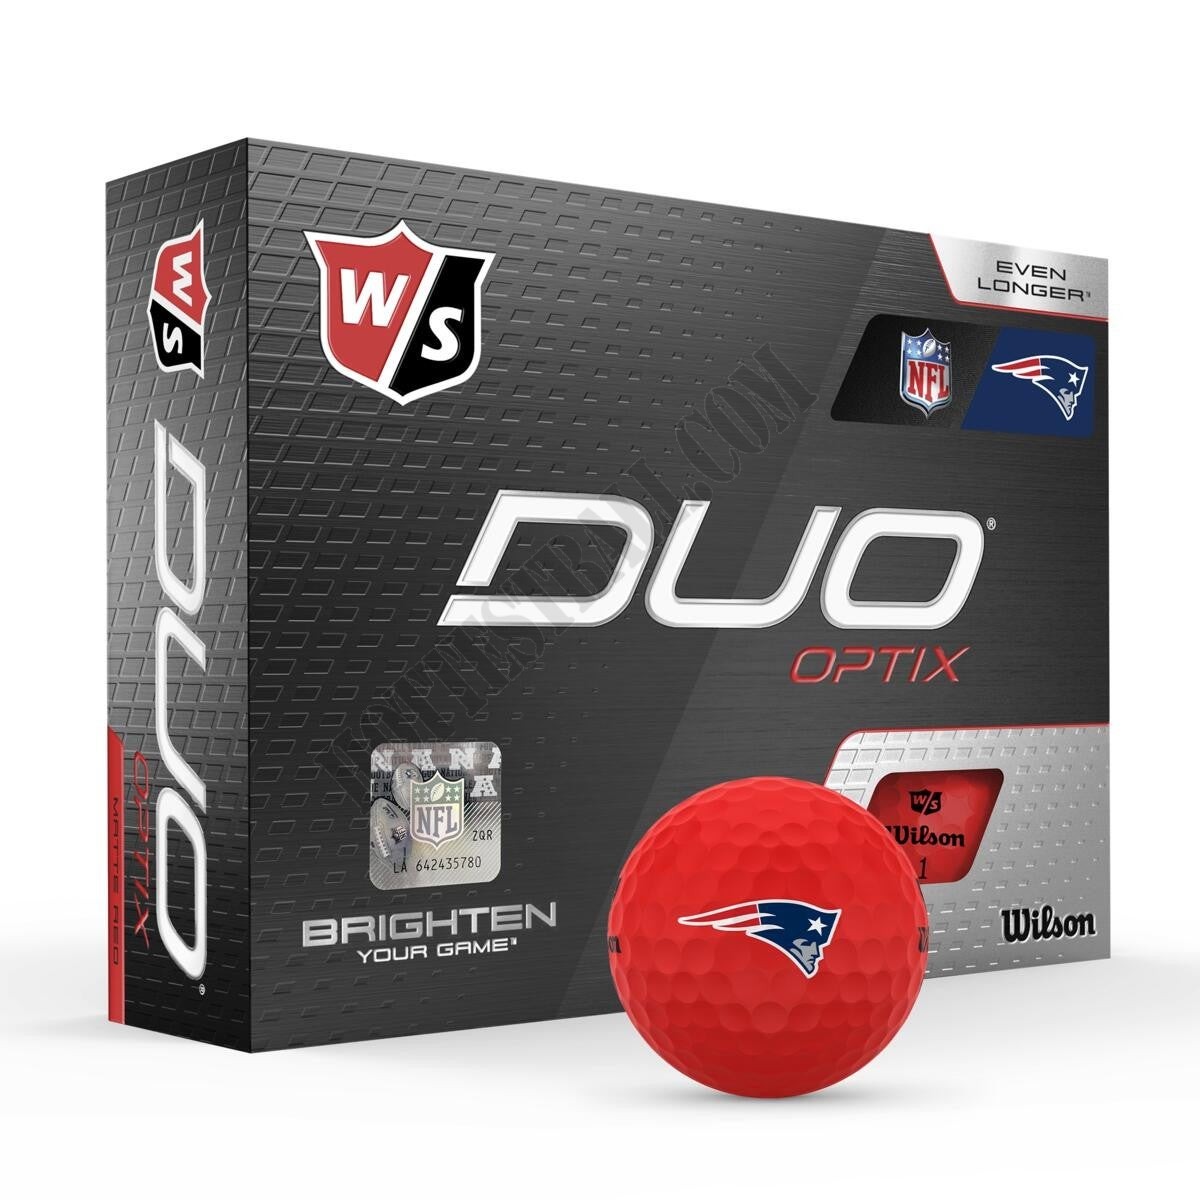 Duo Optix NFL Golf Balls - New England Patriots ● Wilson Promotions - Duo Optix NFL Golf Balls - New England Patriots ● Wilson Promotions